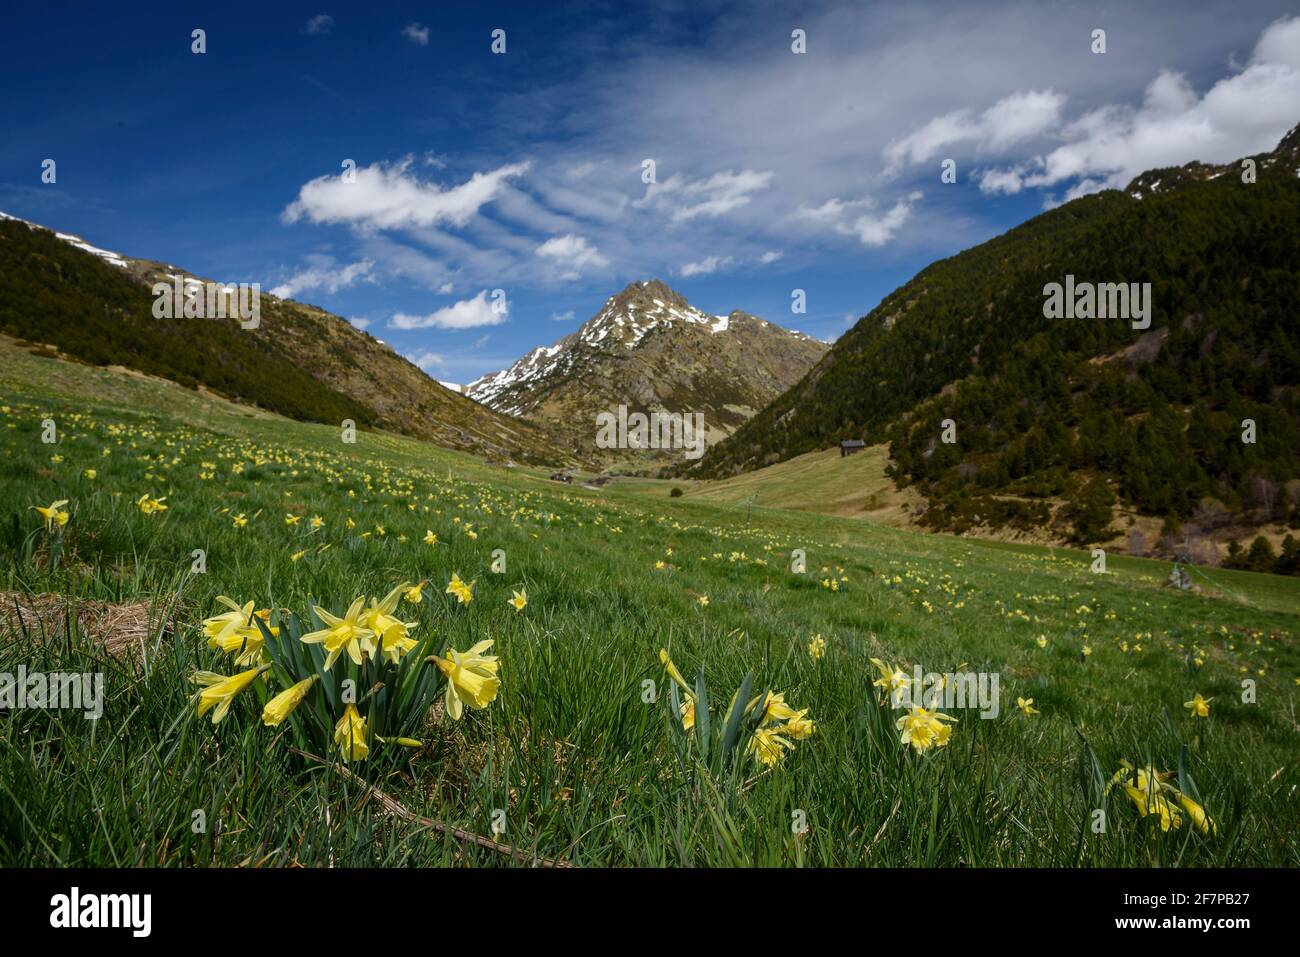 Jonarcisse sauvage (Narcissus pseudoquisse) dans la vallée des Incles au printemps (Andorre, Pyrénées) ESP: Narciso amarillo en el valle de Incles en primavera Banque D'Images